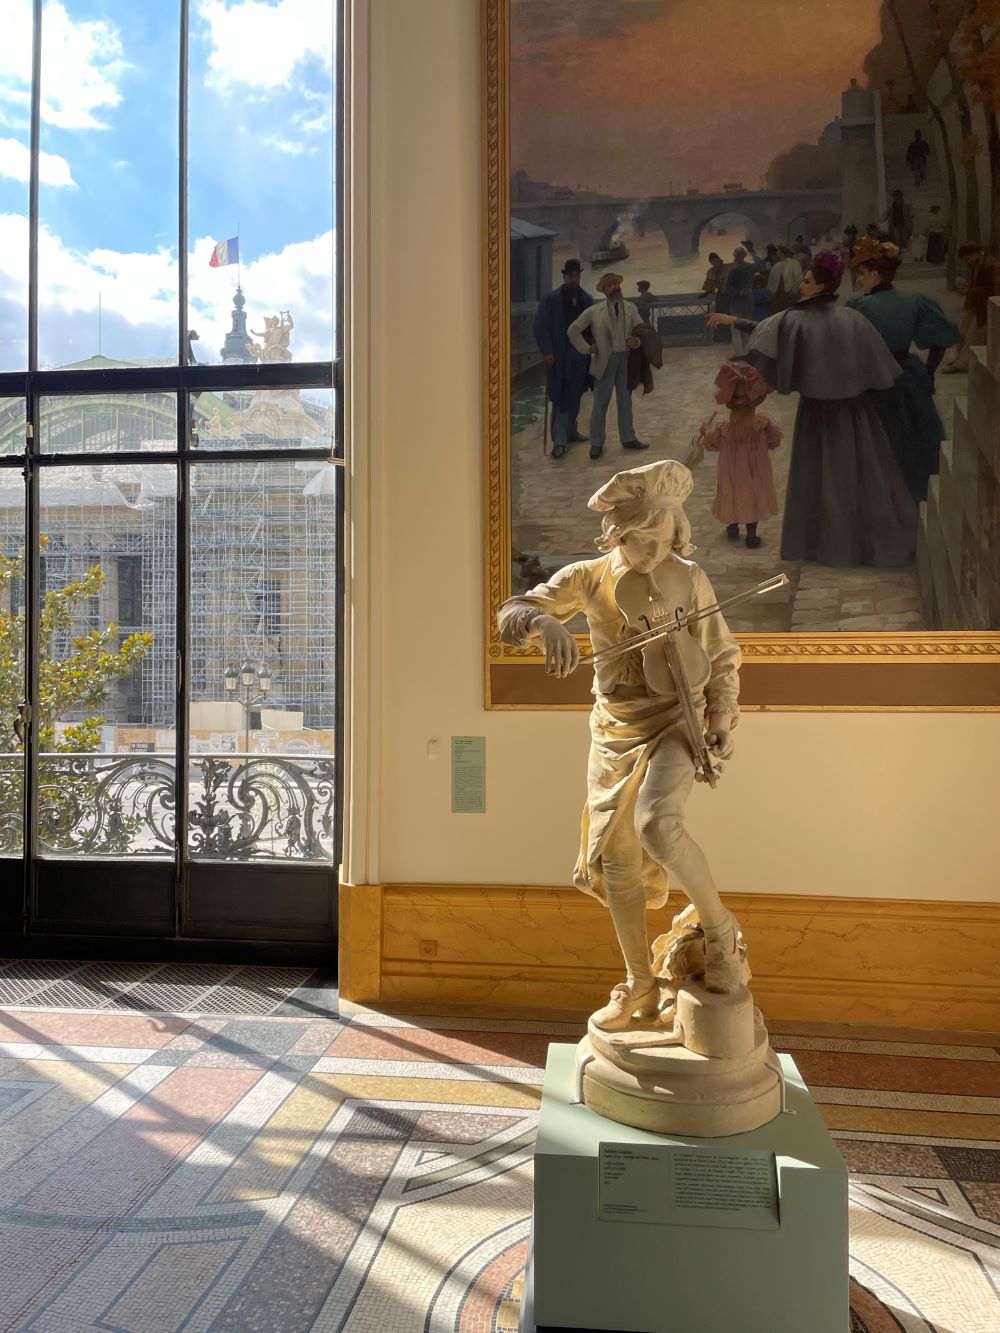 Adrien Gaudez, Lully enfant sculpture 1885, Petit Palais - Paris travel blog